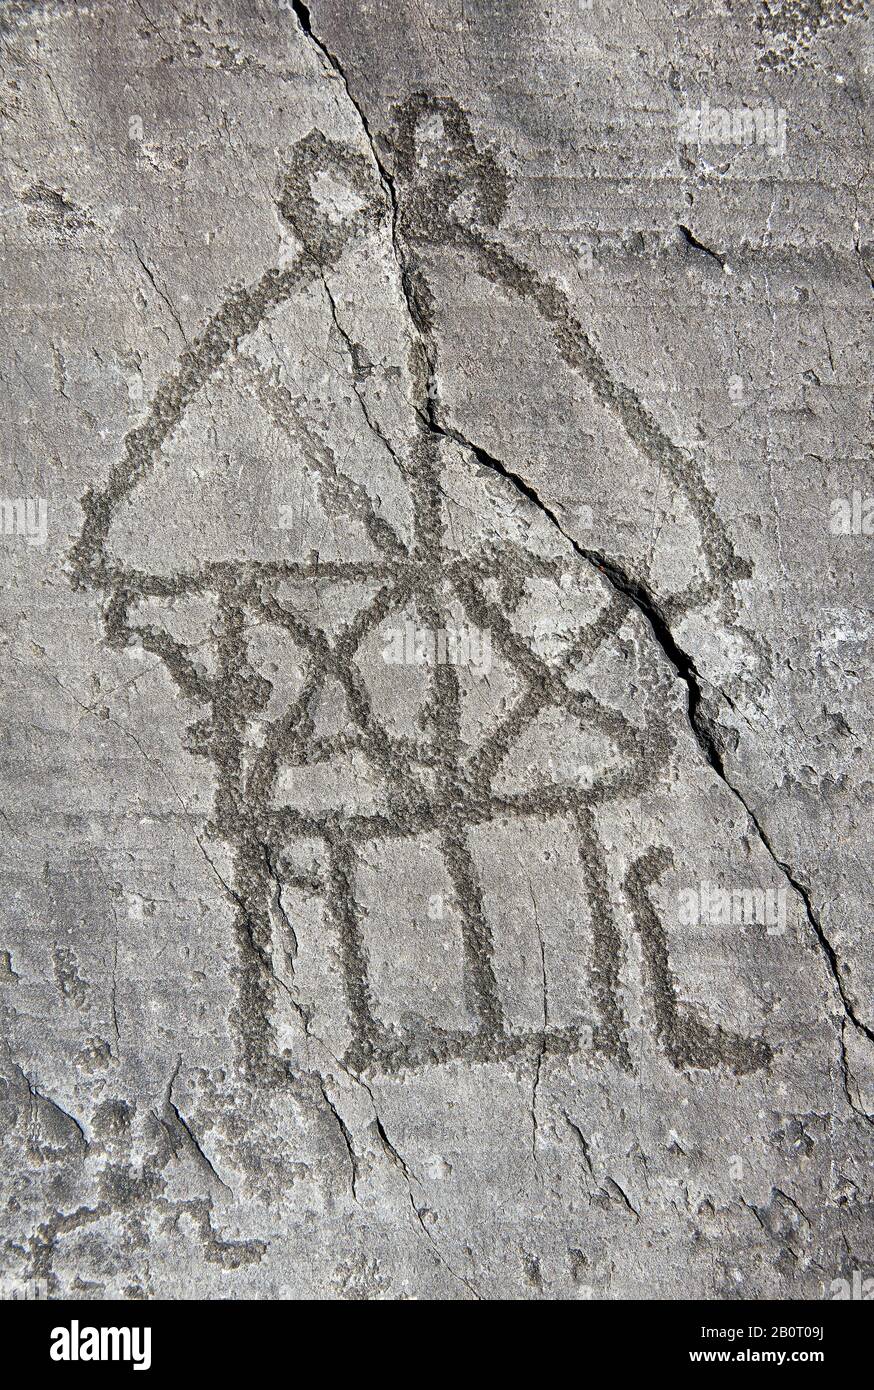 Petroglyph, sculpture de roche, d'une maison sur pilotis. Sculpté par l'ancien peuple Camuni dans l'âge du fer entre 1000-1200 BC. Rock no 24, Foppi di Nadro, Banque D'Images